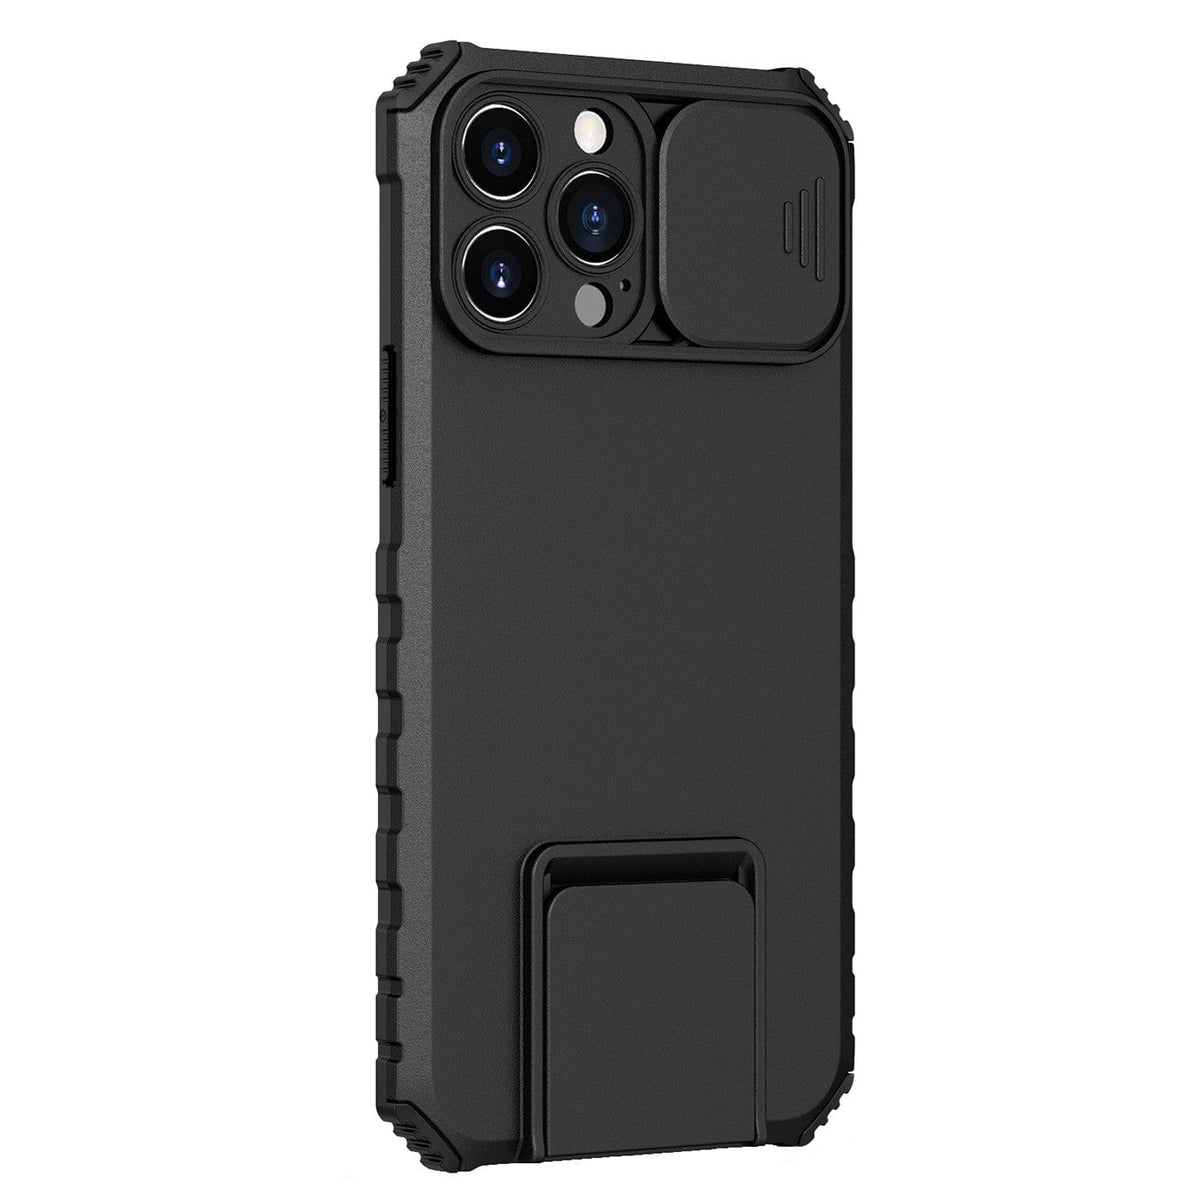 Husa Defender cu Stand pentru iPhone 12, Negru, Suport reglabil, Antisoc, Protectie glisanta pentru camera,